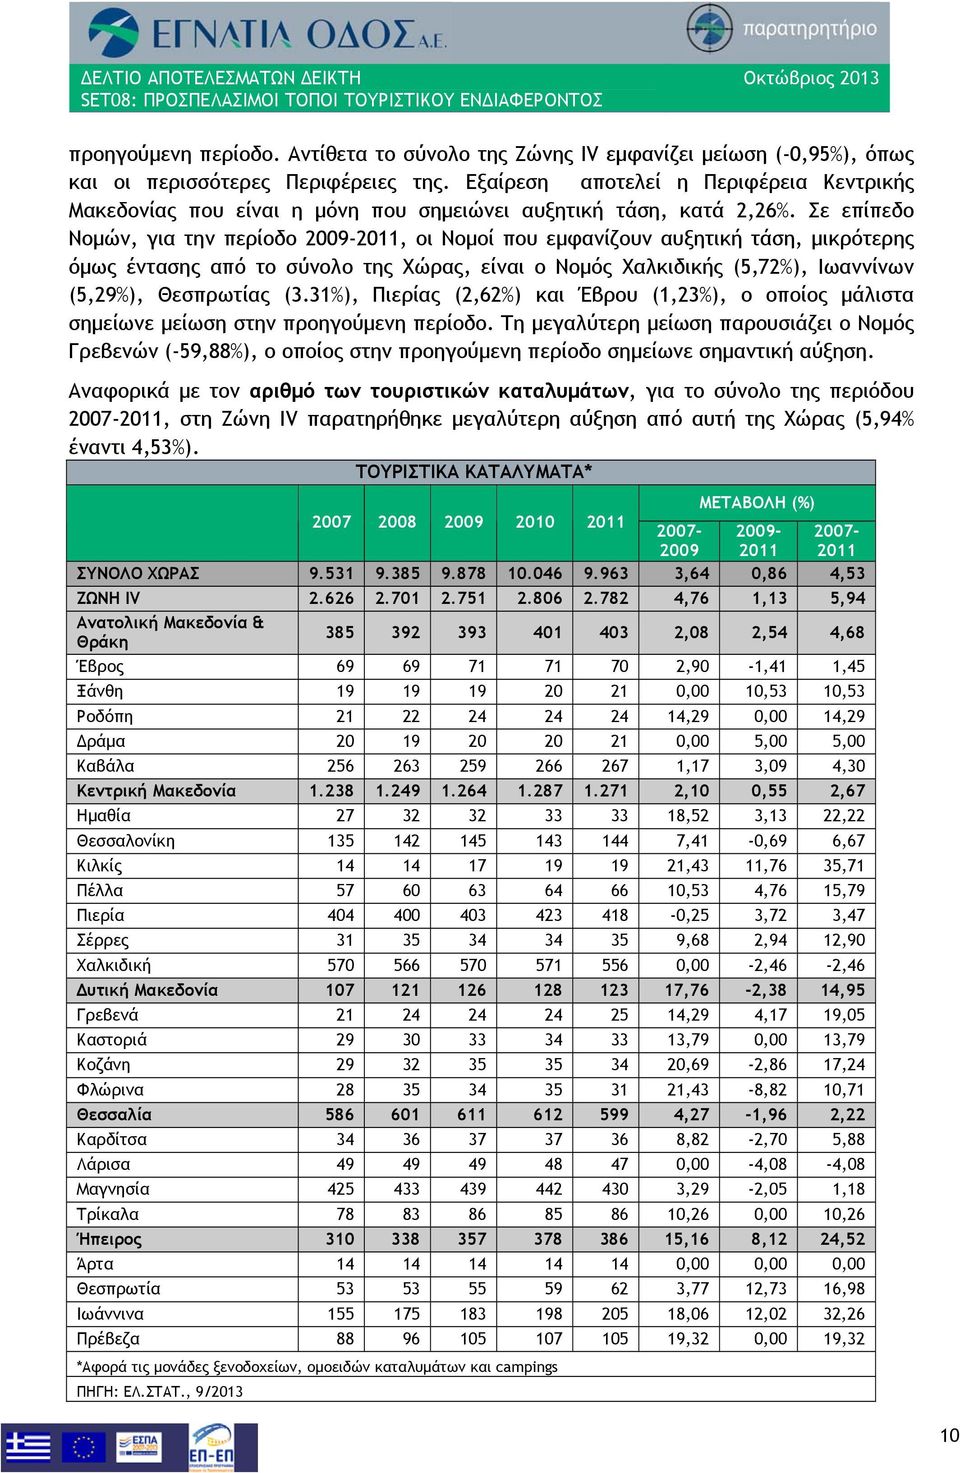 Σε επίπεδο Νομών, για την περίοδο 2009-2011, οι Νομοί που εμφανίζουν αυξητική τάση, μικρότερης όμως έντασης από το σύνολο της Χώρας, είναι ο Νομός Χαλκιδικής (5,72%), Ιωαννίνων (5,29%), Θεσπρωτίας (3.